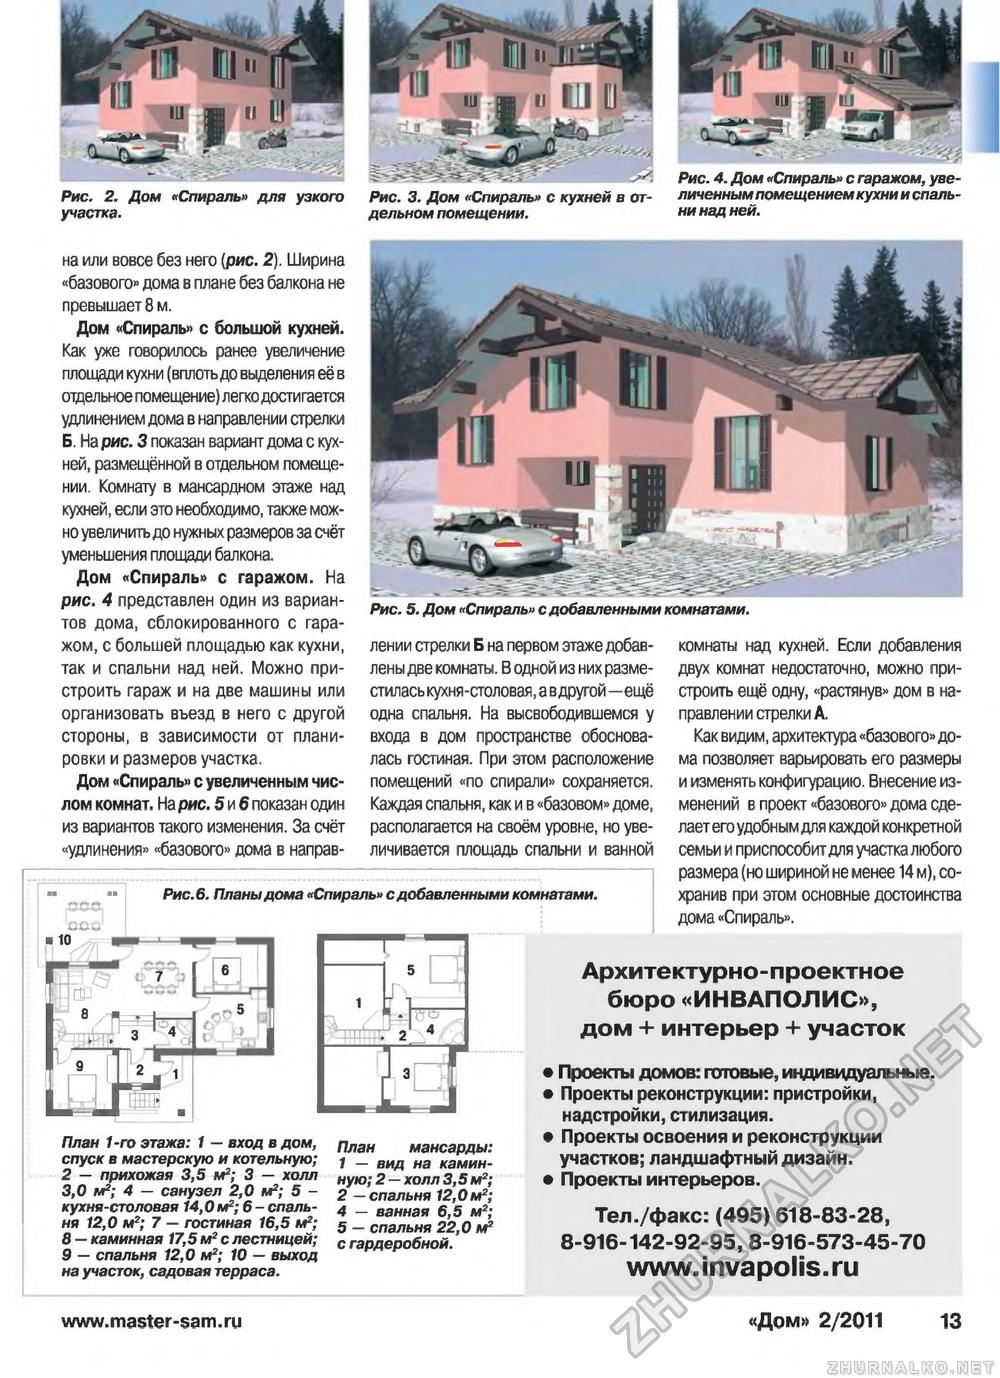 Дом 2011-02, страница 13